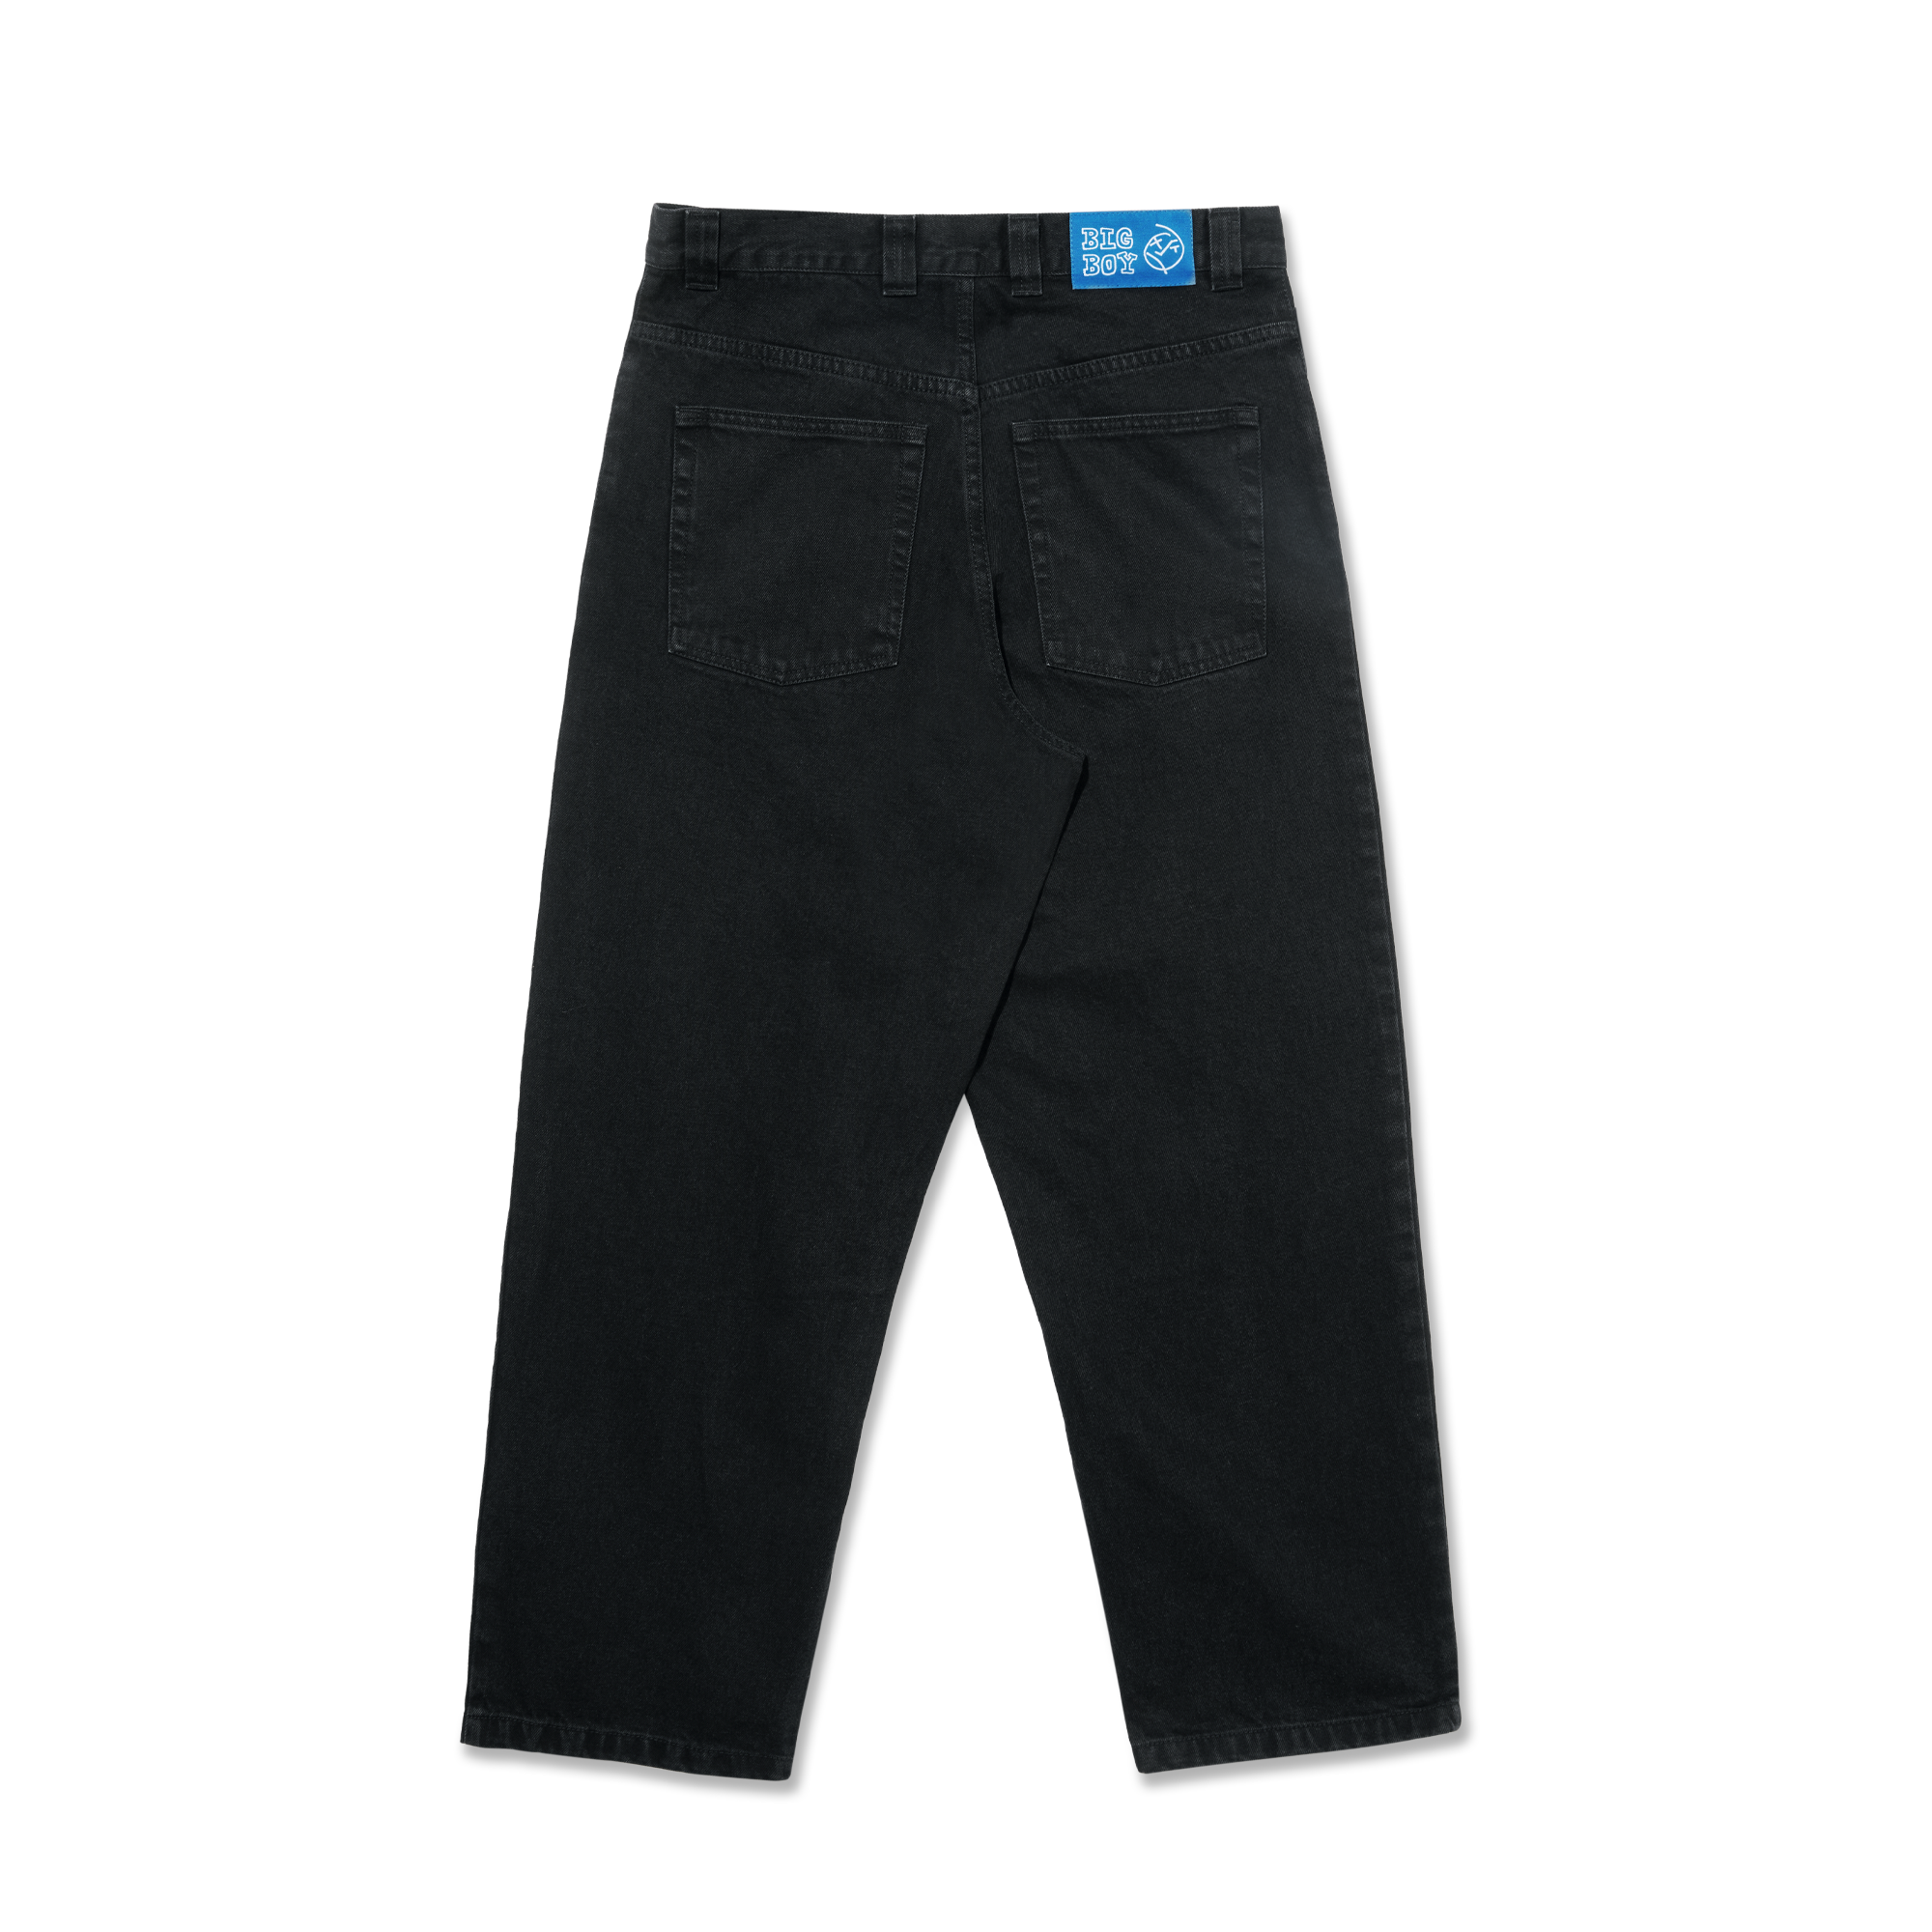 セール人気SALE【りょう様専用】Polar Skate Co bigboy jeans パンツ